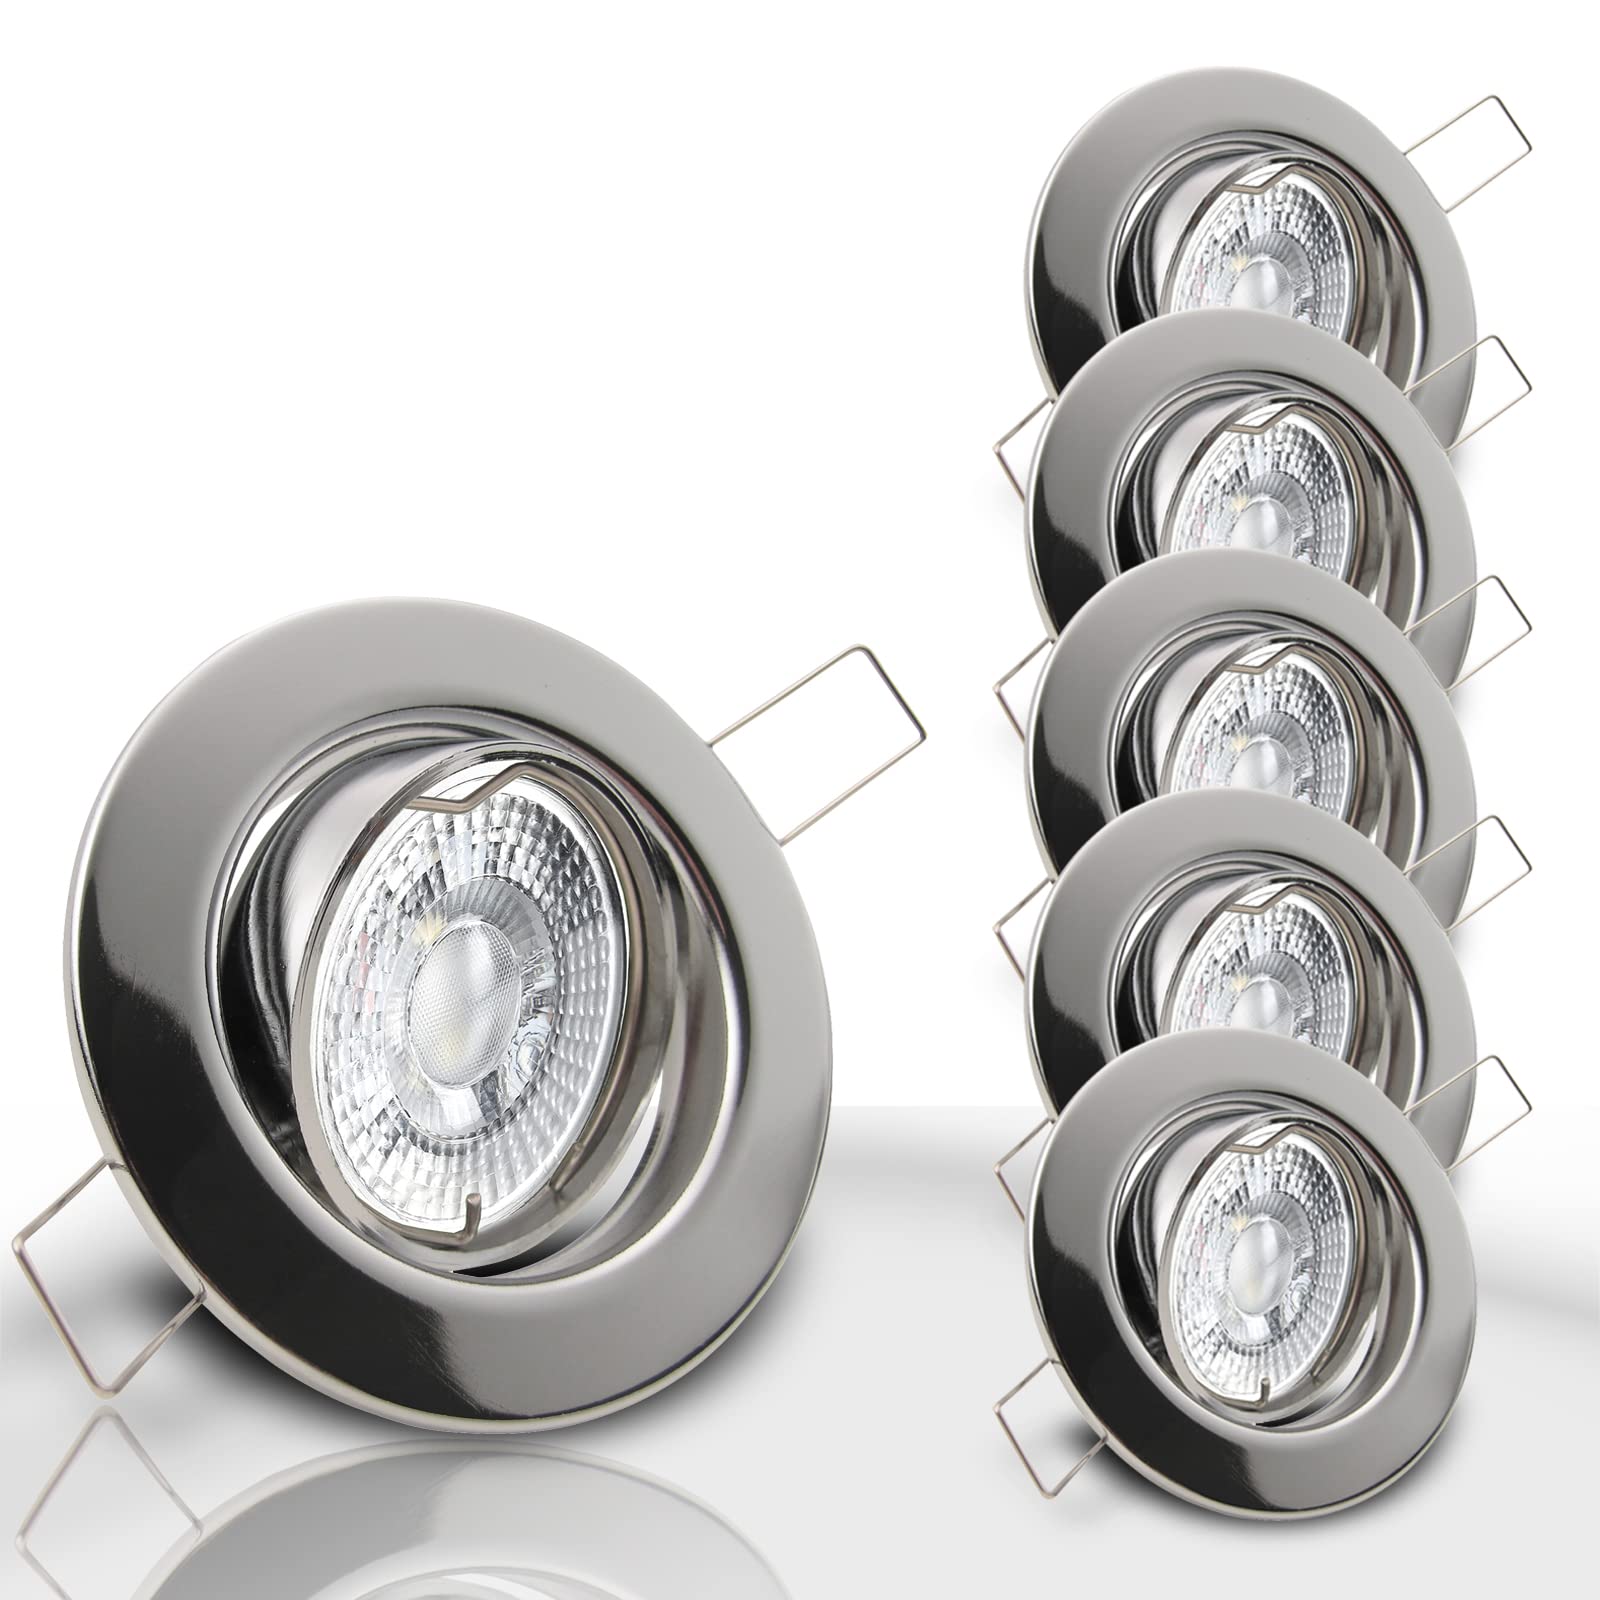 trendlights24 Decora Decken Einbaustrahler flach 35 mm 230V 5er Set - LED Spots je 5W Neutralweiß 400lm austauschbar Chrom glänzend schwenkbar 68 mm